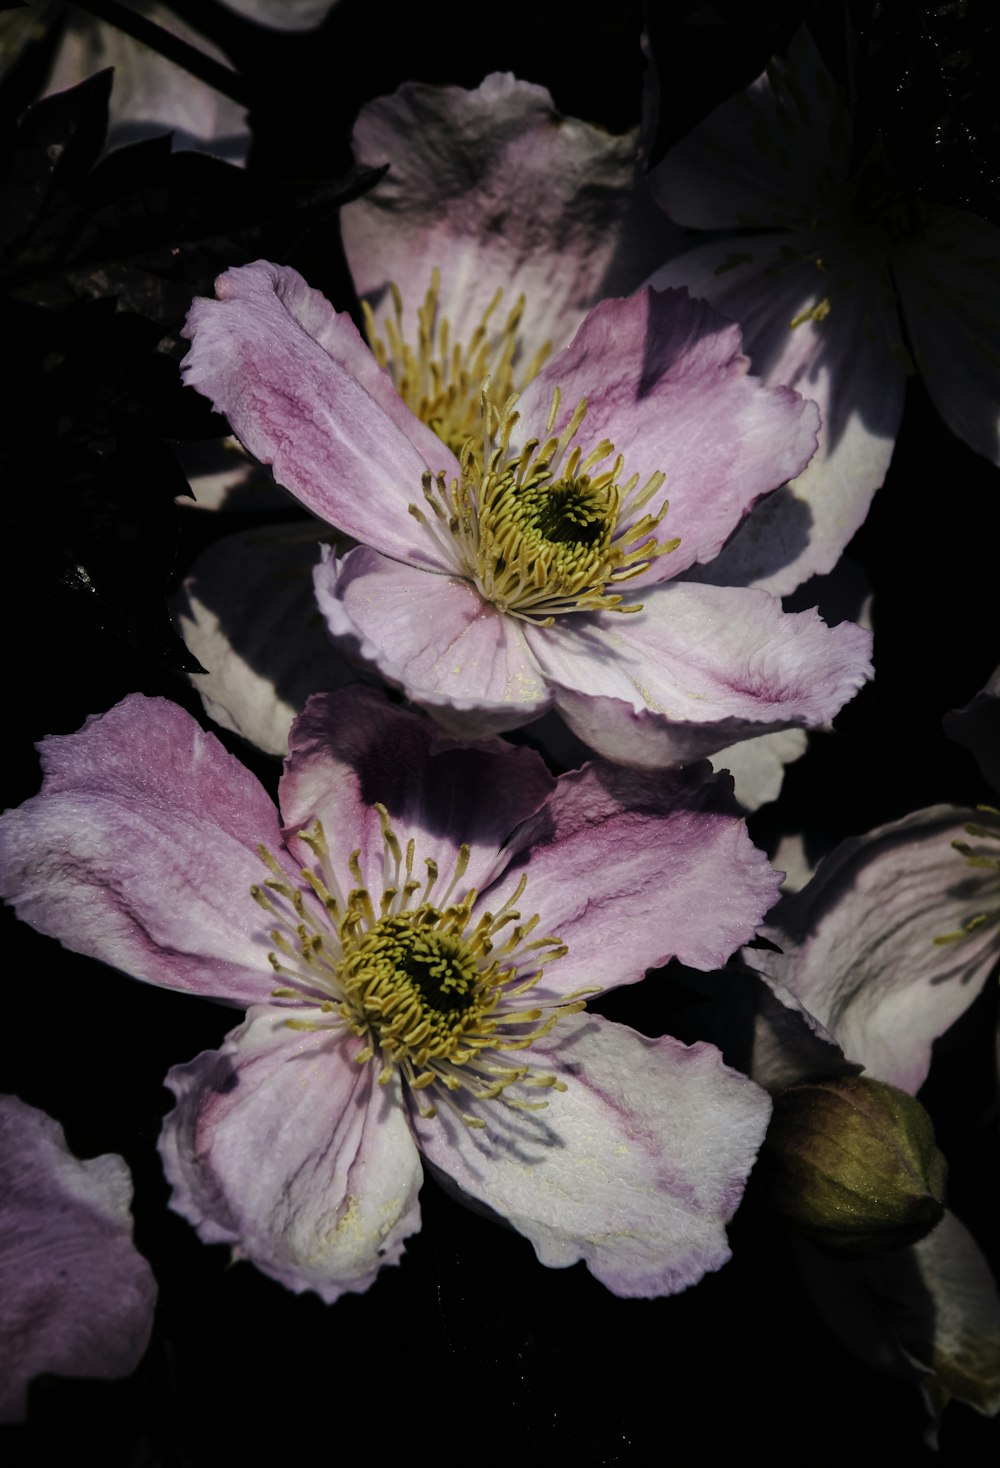 fiore viola e bianco nella fotografia ravvicinata